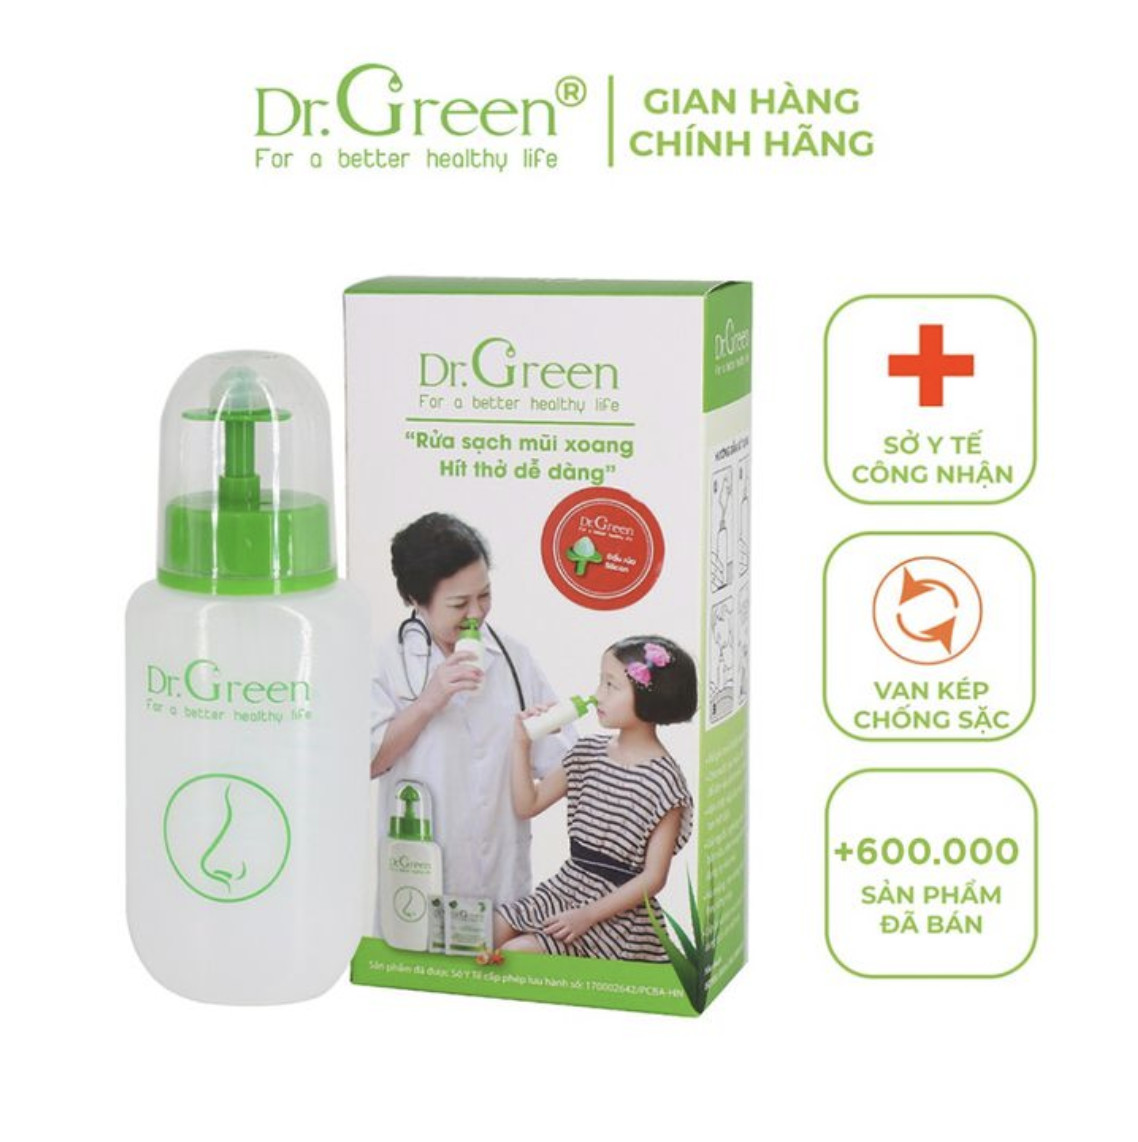 Hơn 600.000 khách hàng đã thấy hiệu quả rõ rệt sau khi sửa bình Hơn 600.000 khách hàng đã thấy hiệu quả rõ rệt sau khi sửa bình rửa mũi Dr.Green kể cả những người bị xoang lâu năm.a mũi Dr.Green kể cả những người bị xoang lâu năm.